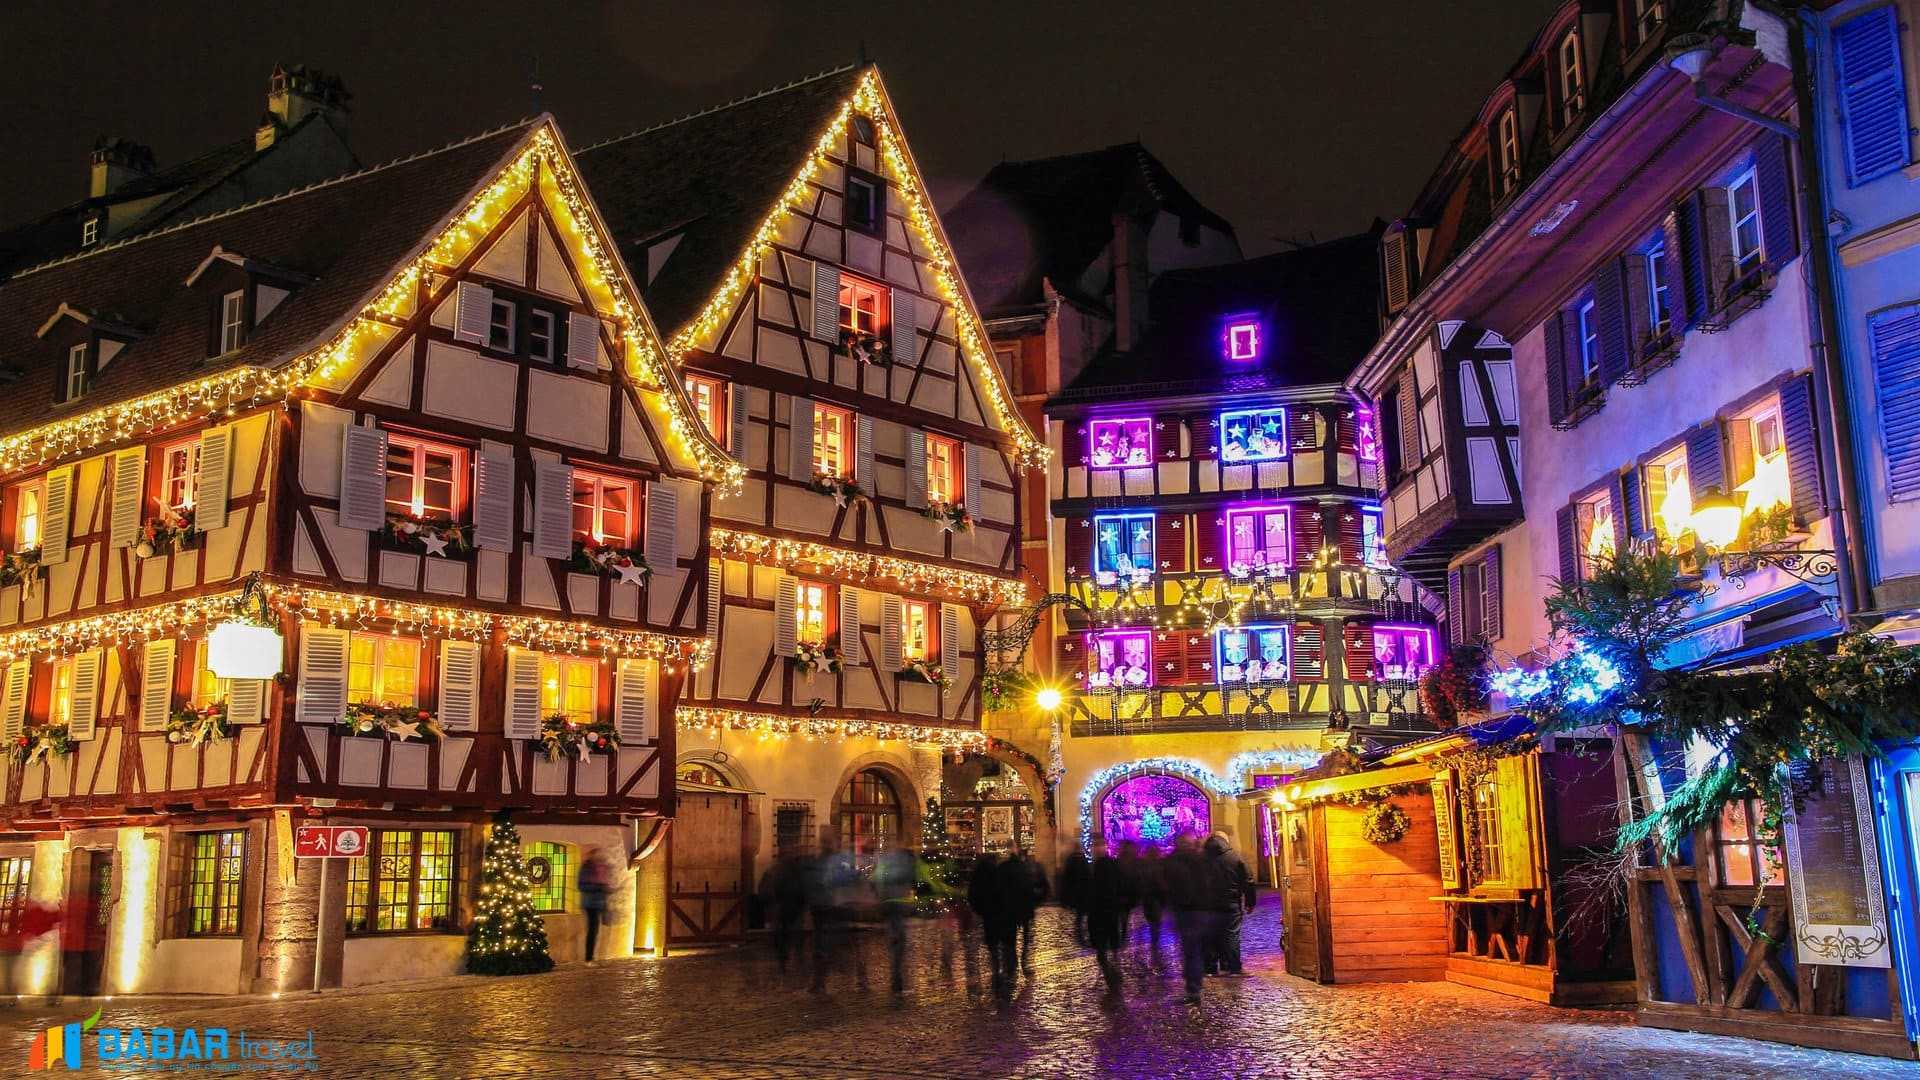 Du lịch Strasbourg (Pháp) - 6 địa điểm ăn - chơi bạn không thể bỏ qua